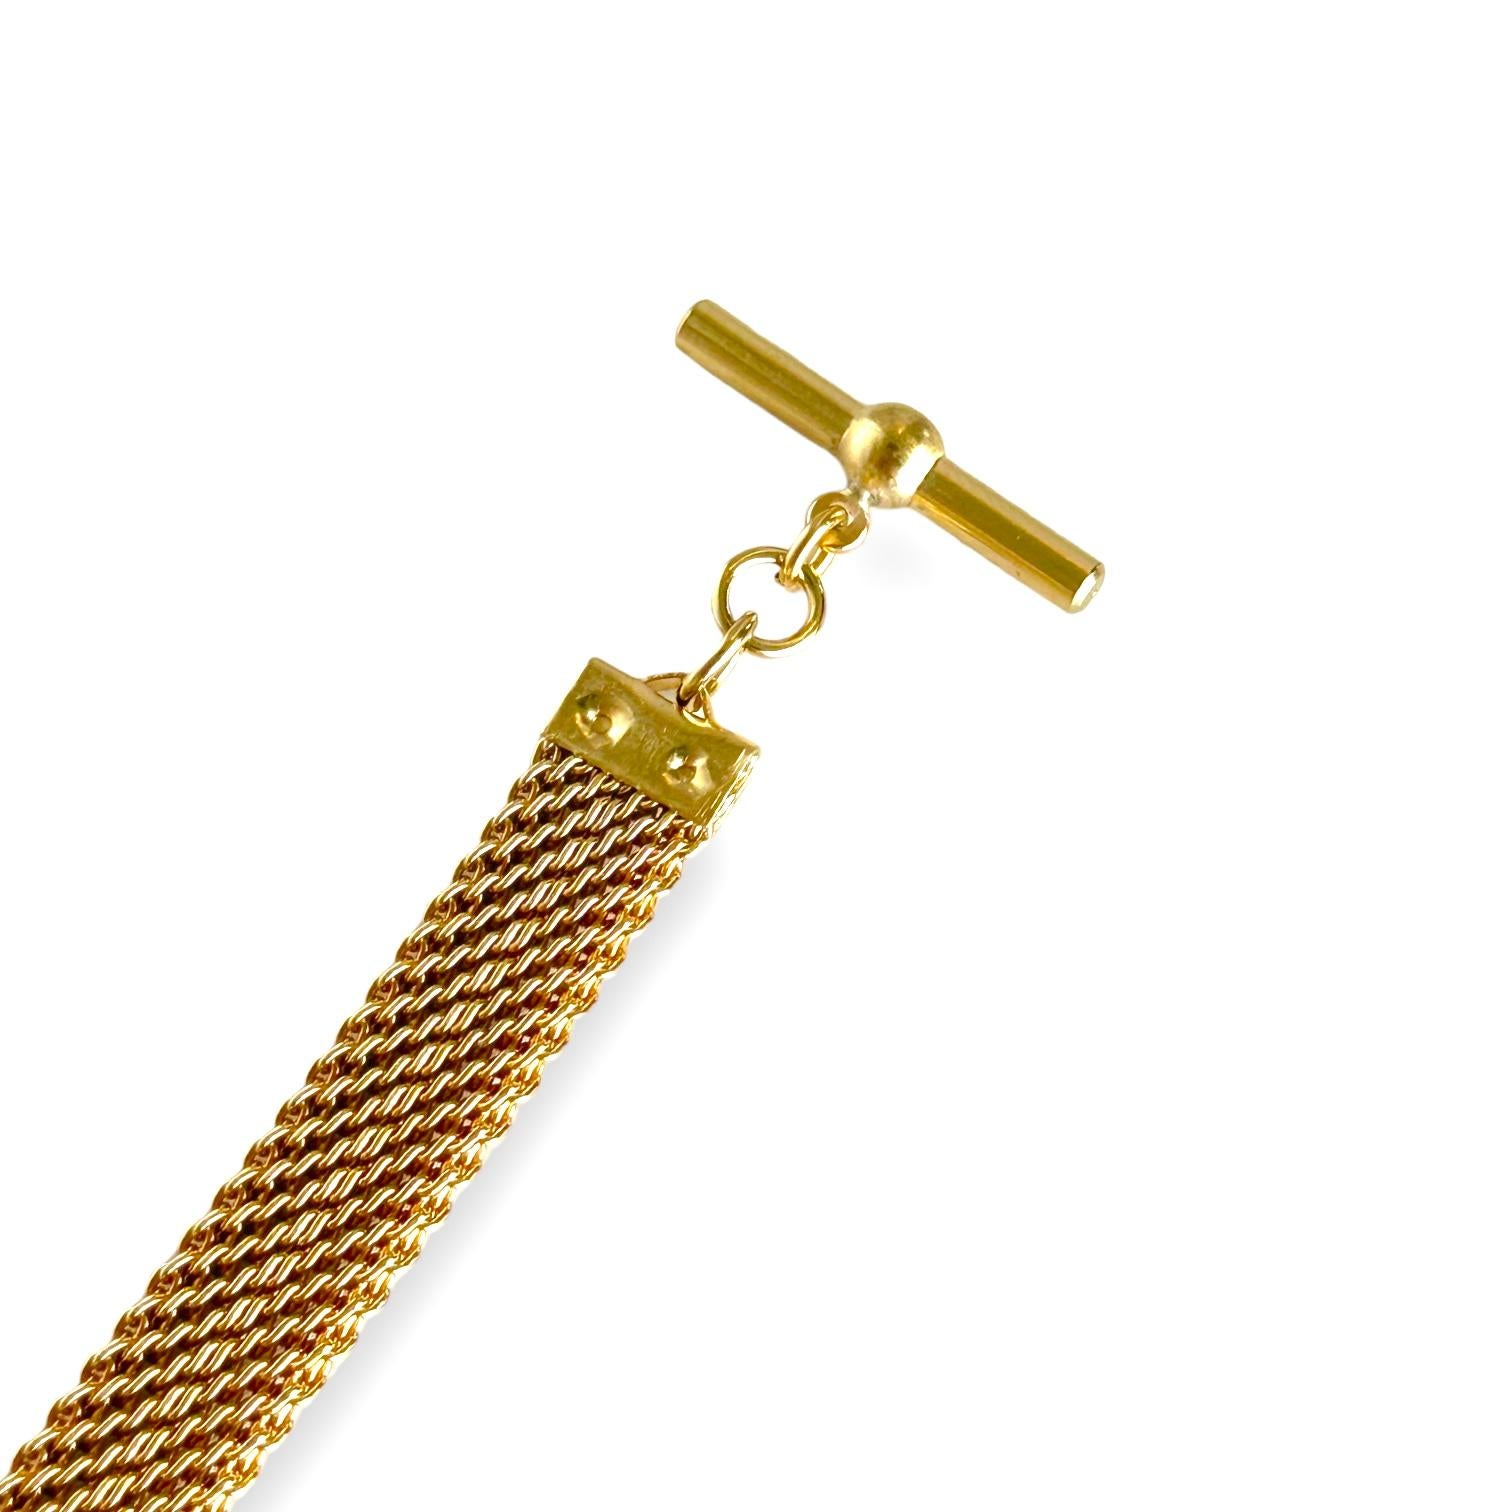 Bracelet vintage en maille victorienne de couleur or jaune.
Longueur du bracelet : 6.25 inches/16 cm.
Largeur de la chaîne : 8,83 mm.
Métal : cuivre.
Poids total 17.20 grammes.